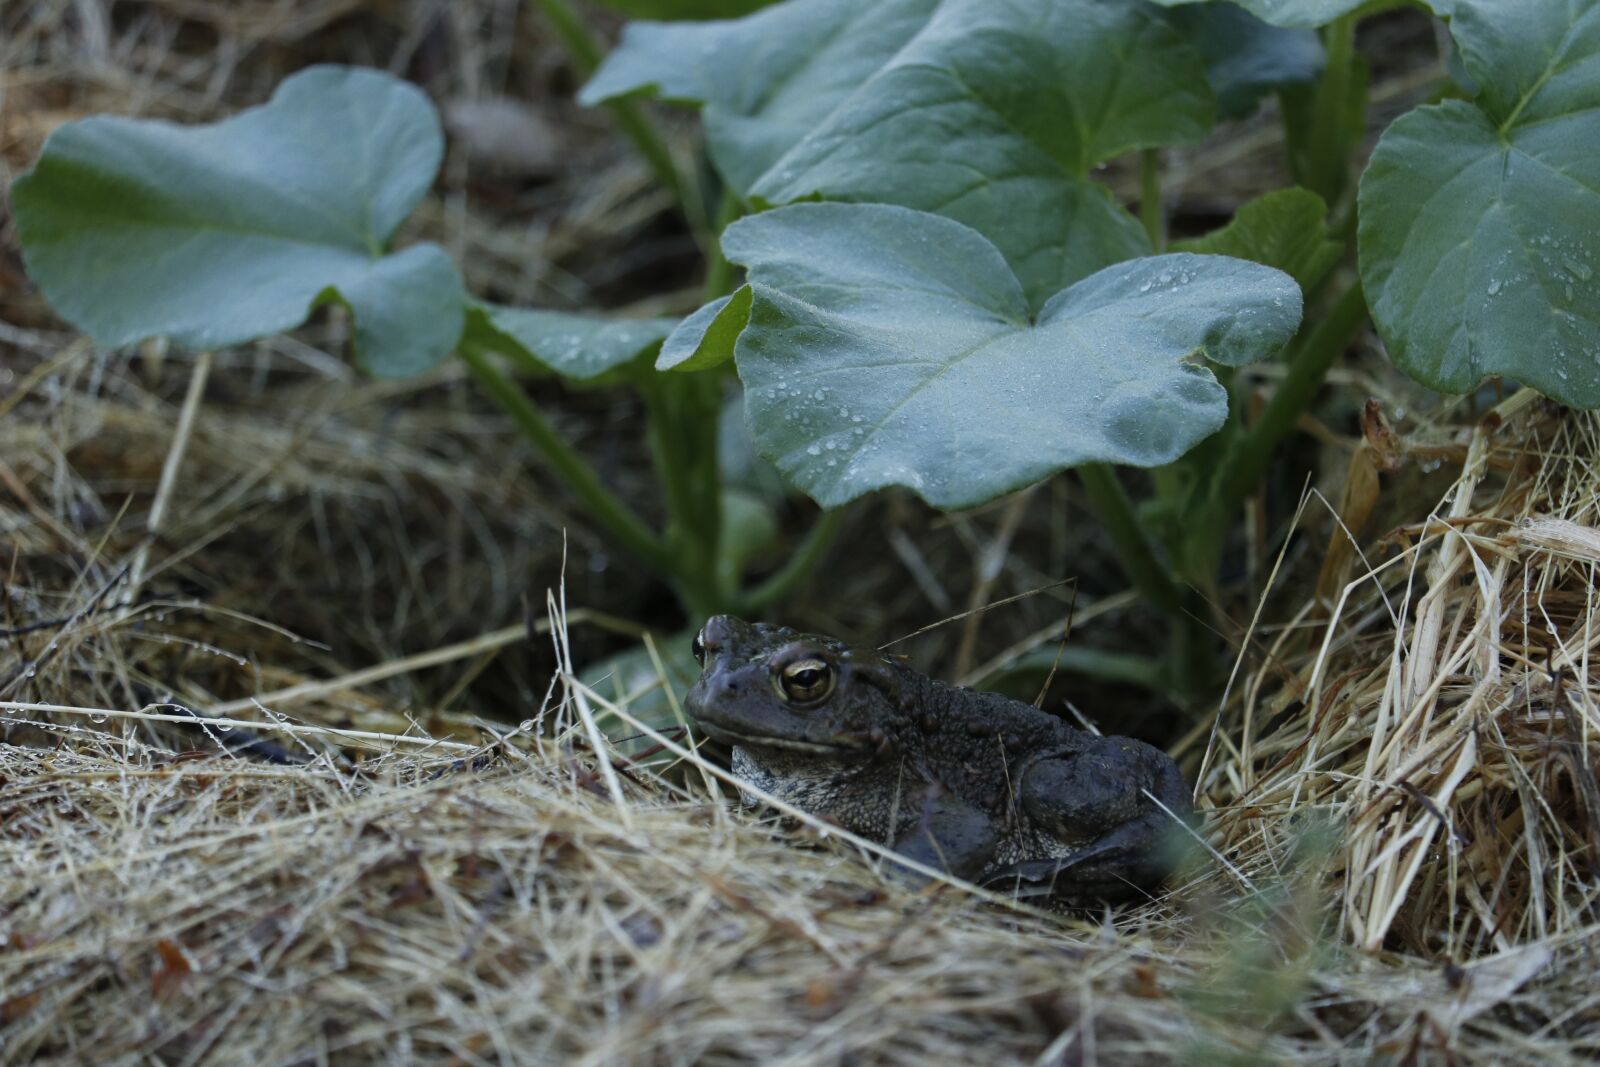 Canon EOS 80D sample photo. Toad, garden, animal photography